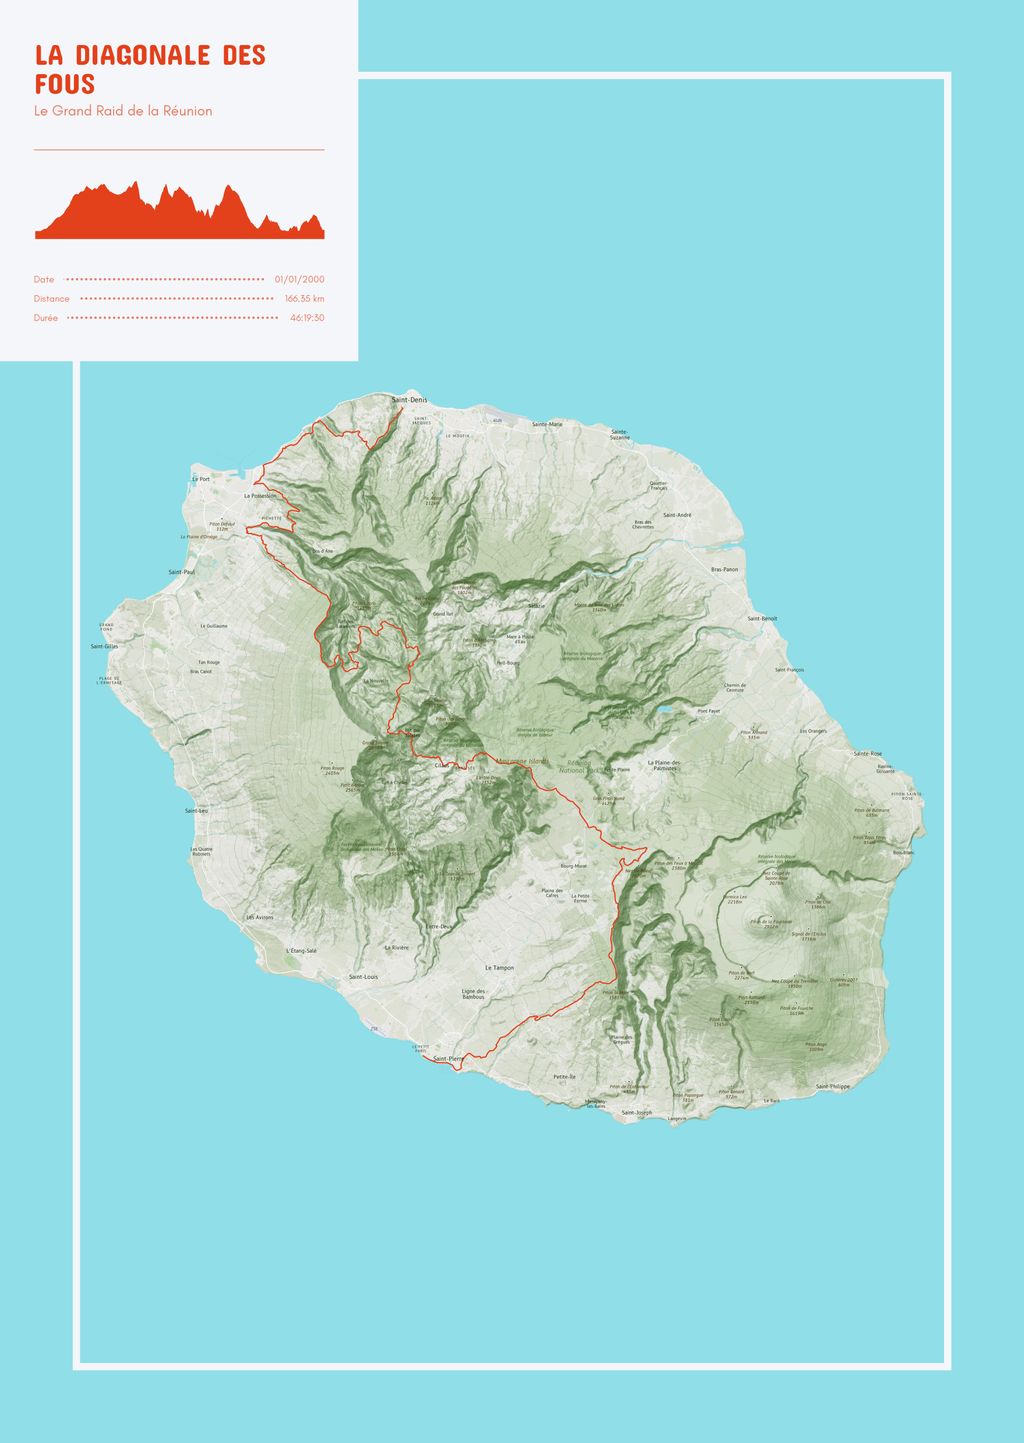 Map poster of the La Diagonale des Fous